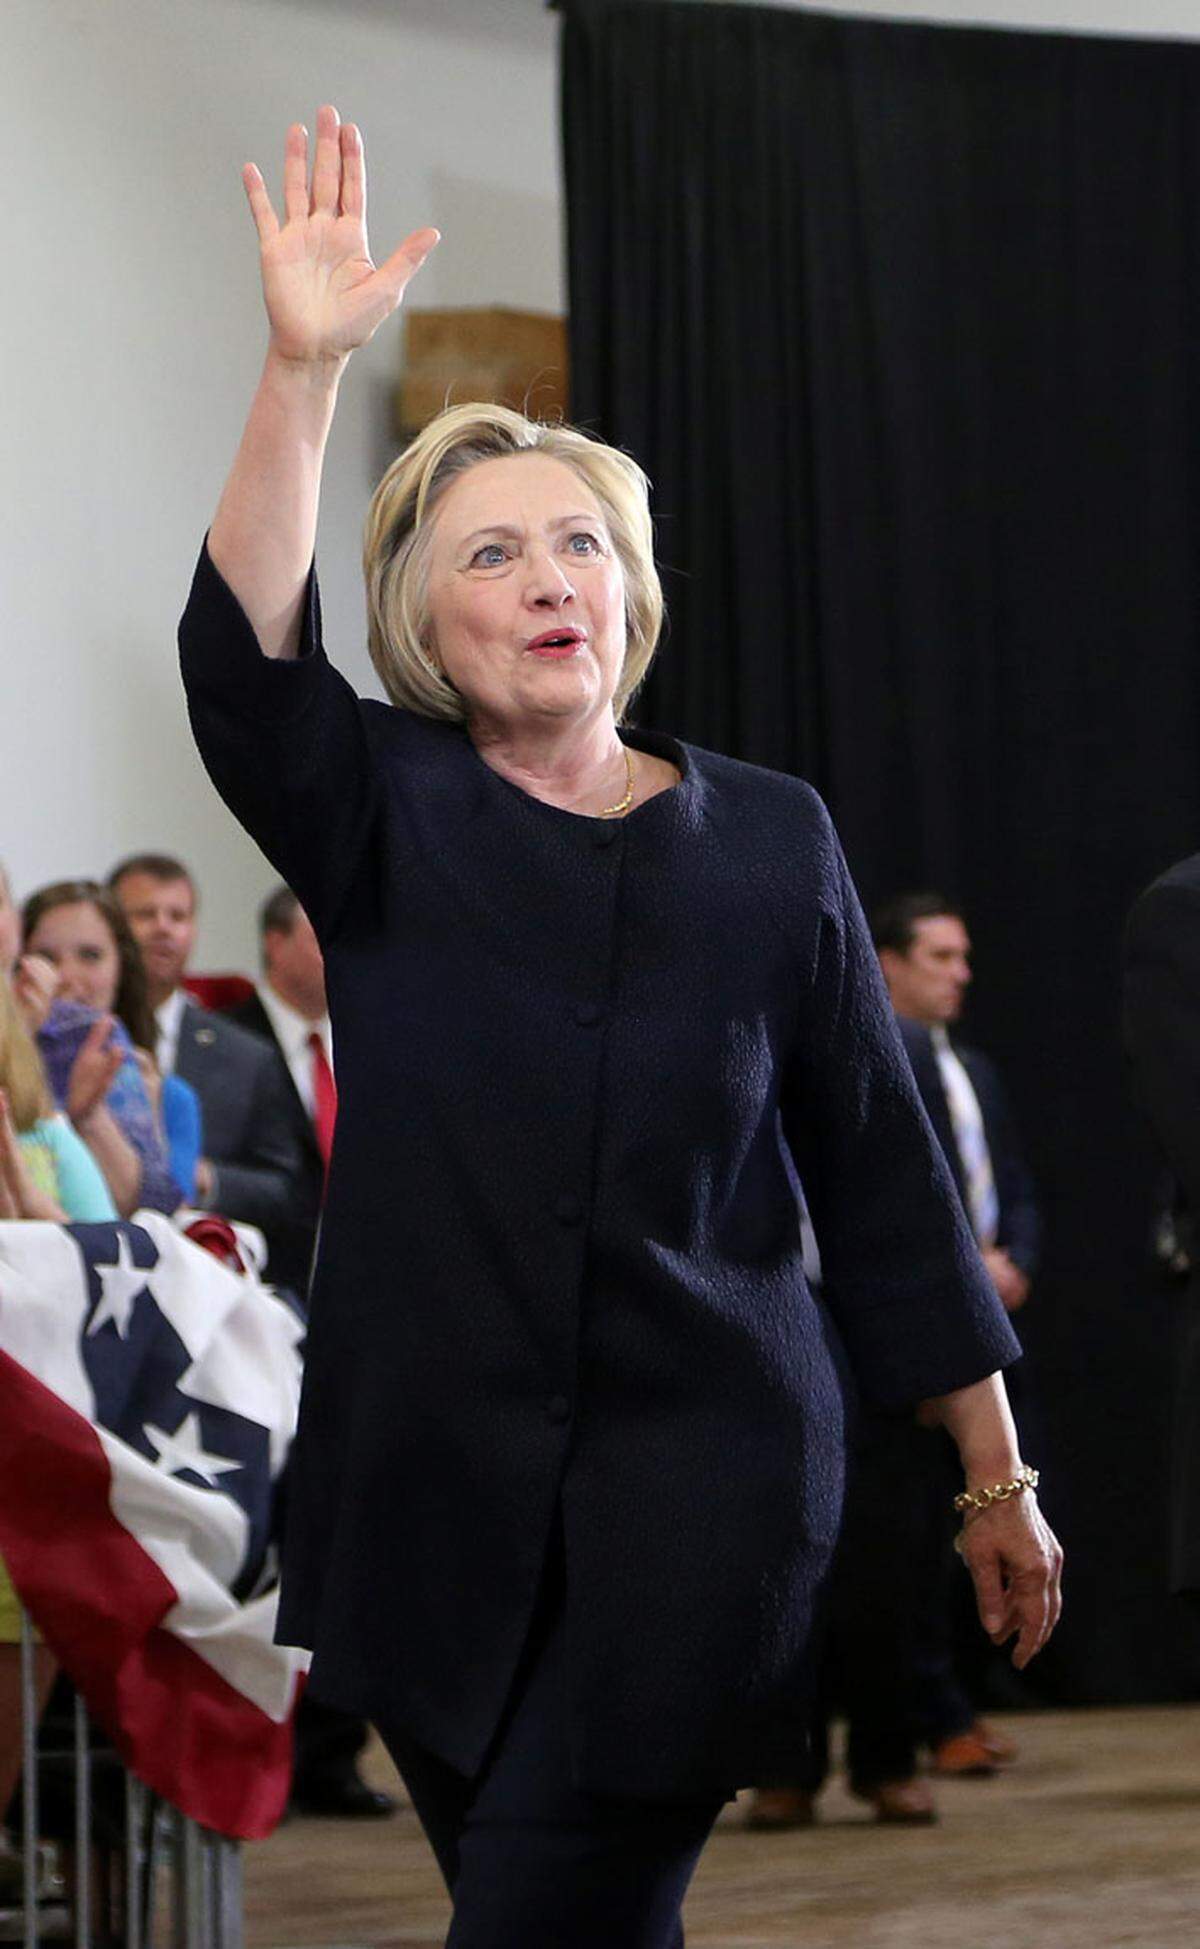 Clintons klassischer Look sind Jacken - gerne in knalligen Farben wie Blau und Rot. Und oft sind sie an den Schultern schmal und in der Hüftgegend etwas weiter geschnitten.